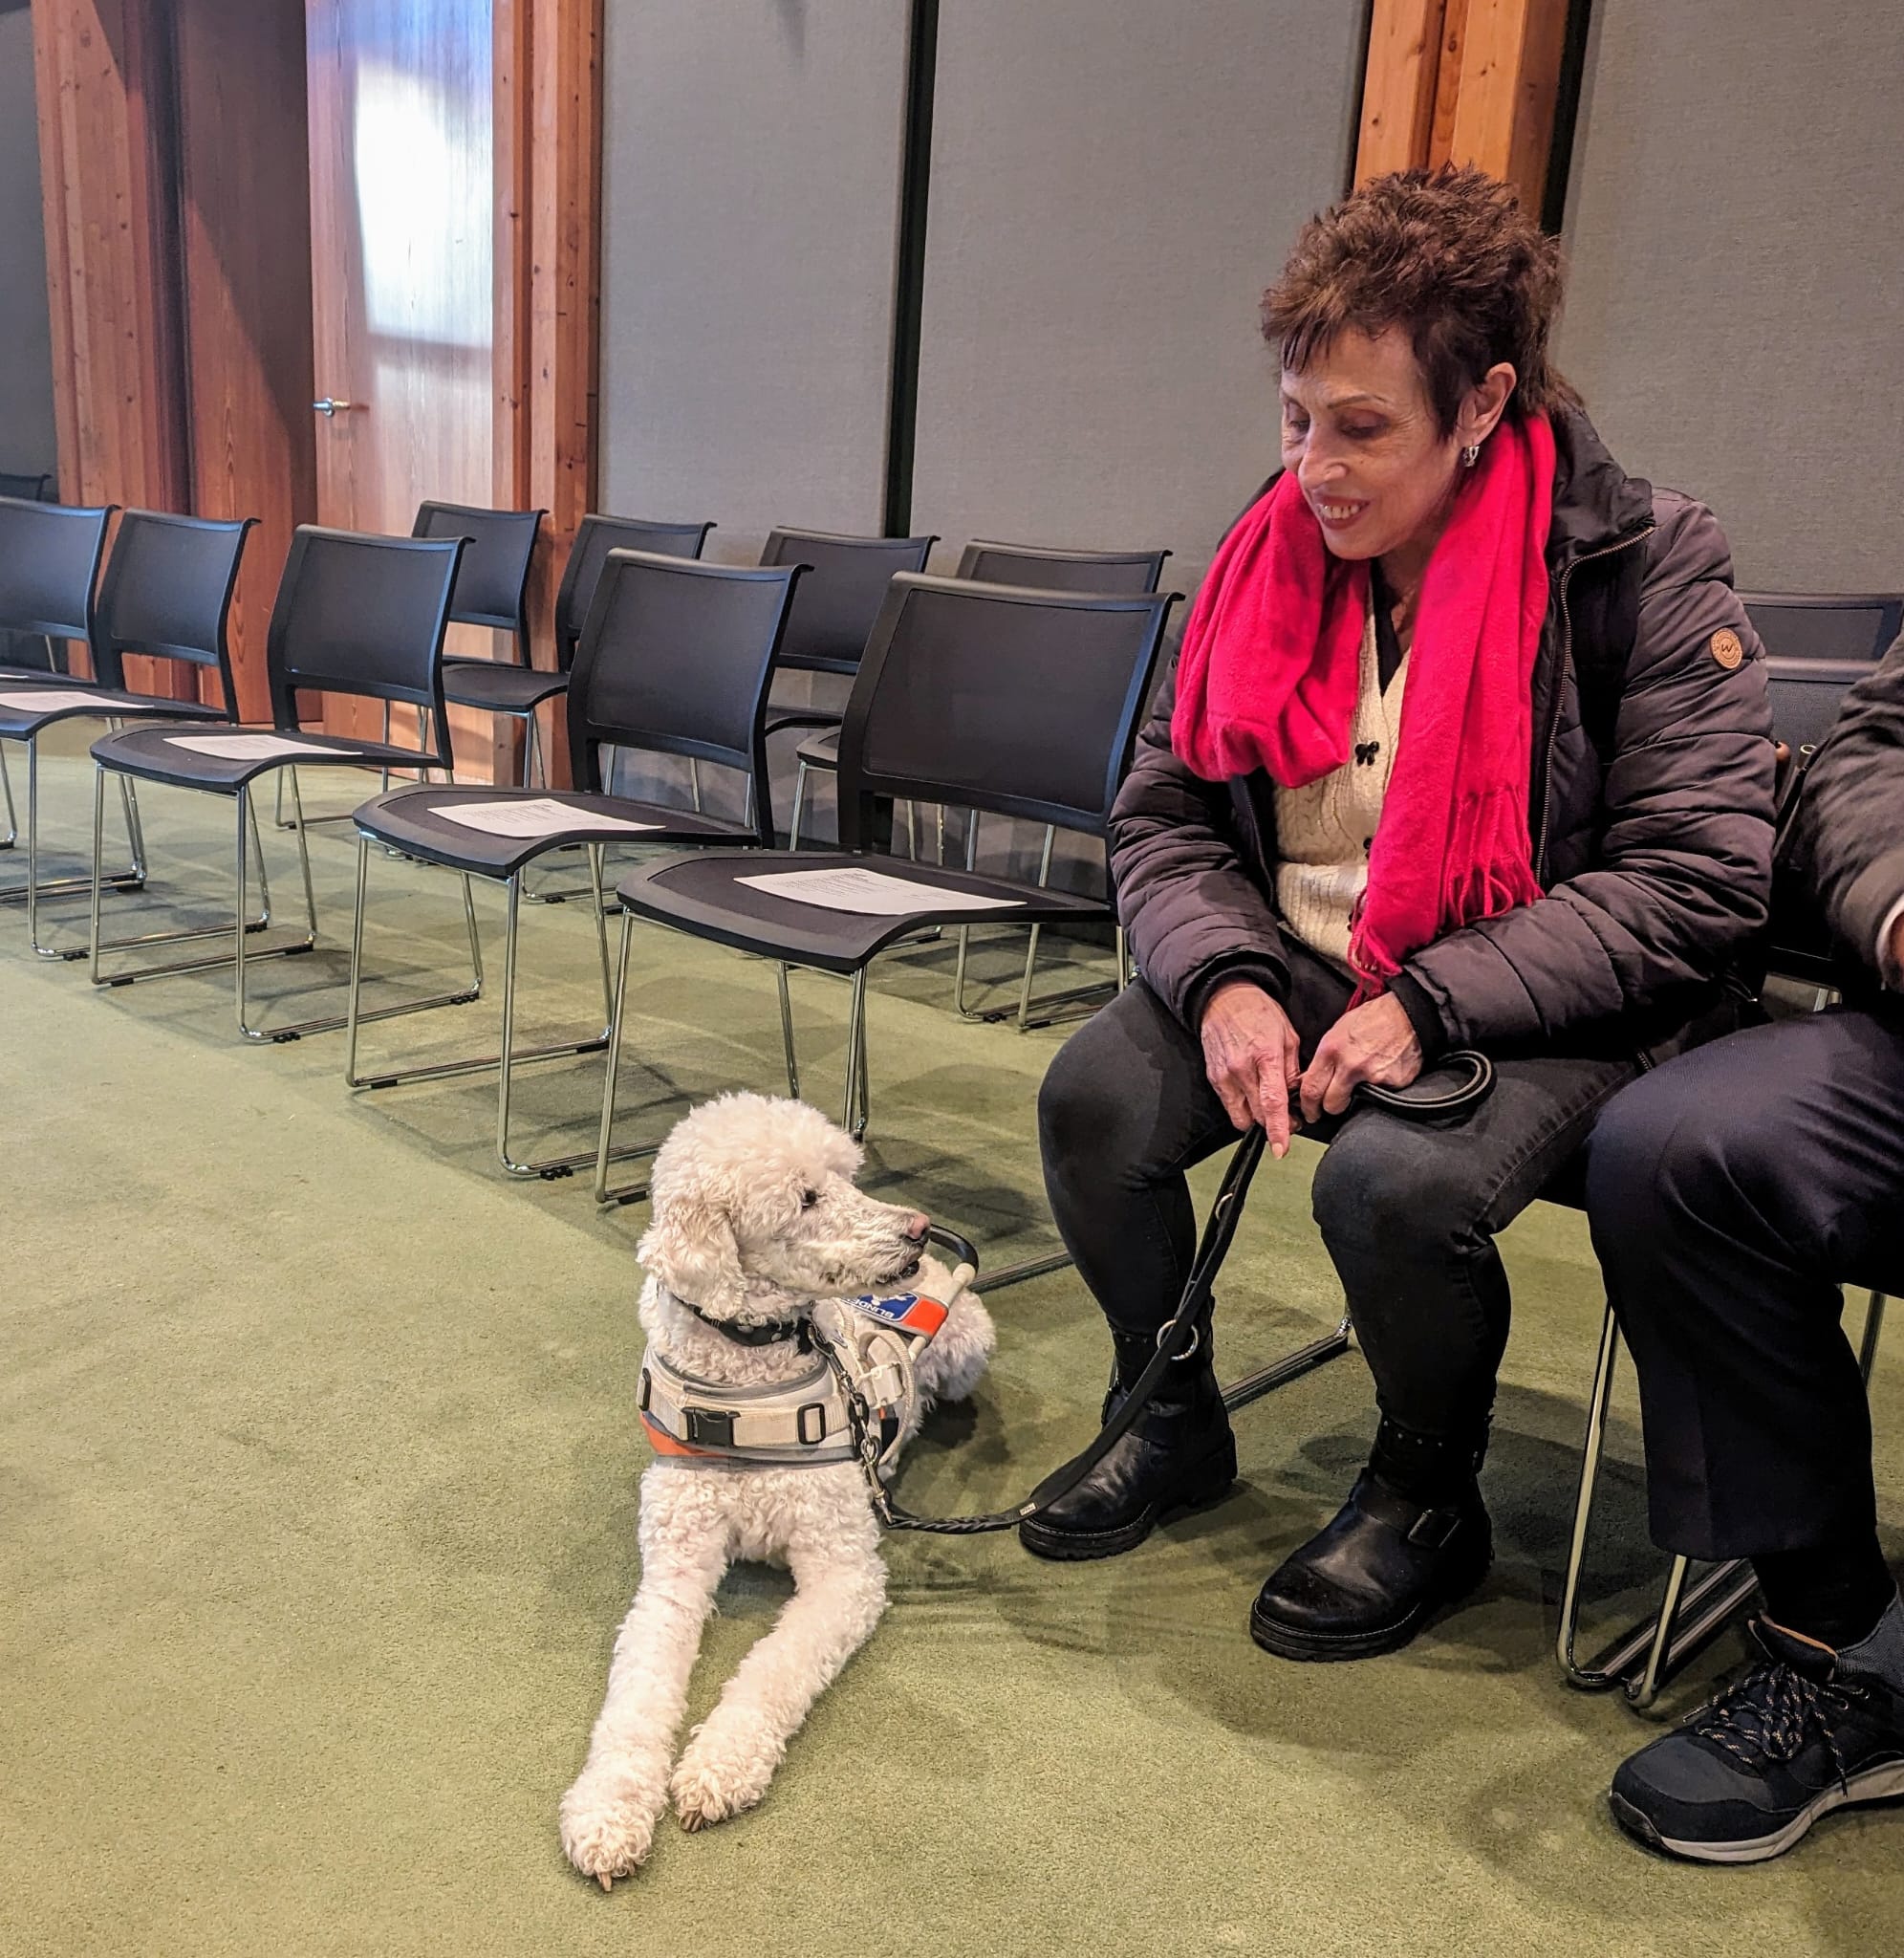 BVP informiert: Chance vertan – Bürgerantrag auf assistenzhundfreundliche Kommune wurde abgelehnt 